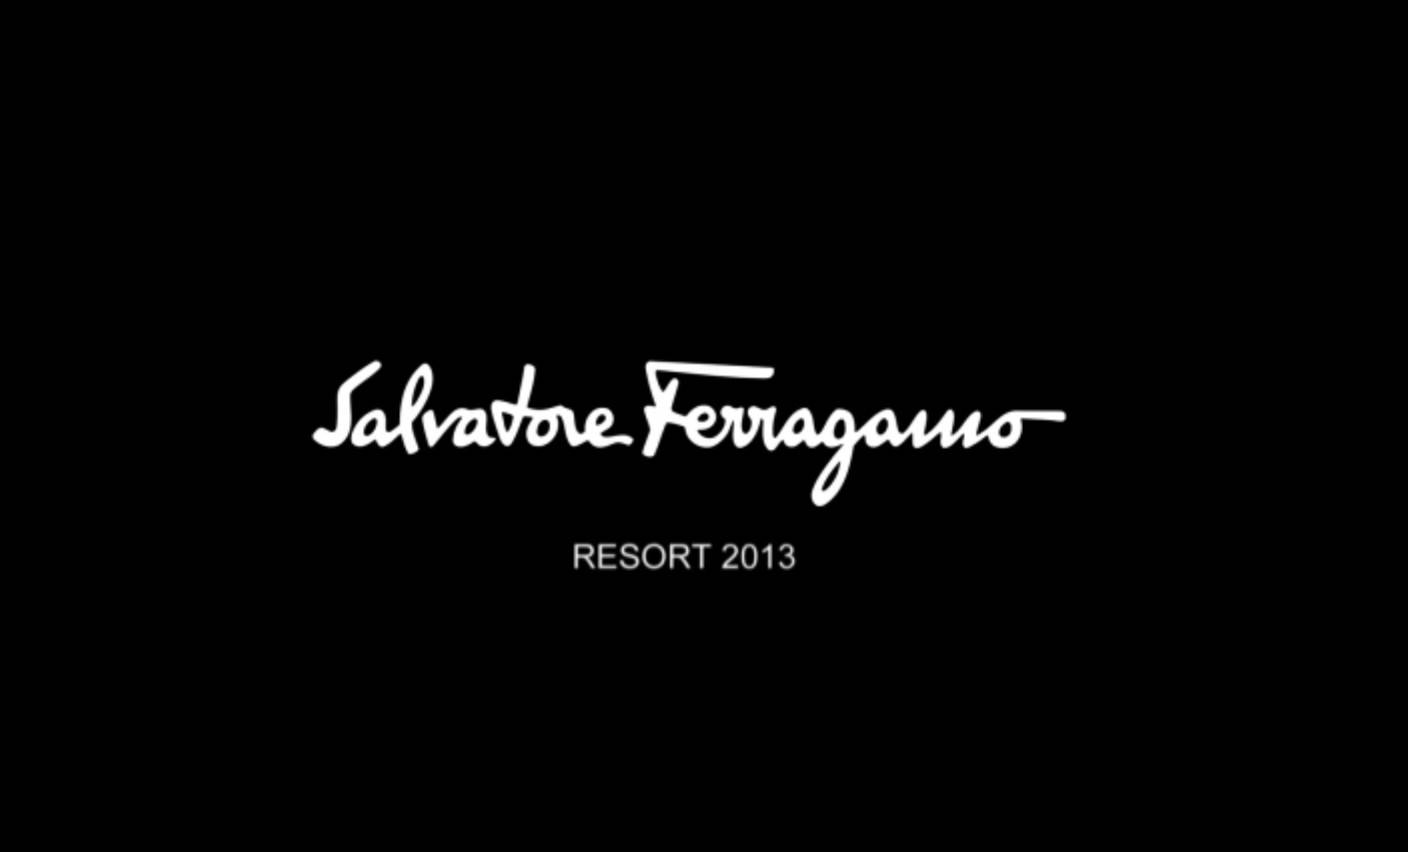 Salvatore Ferragamo Resort 2013